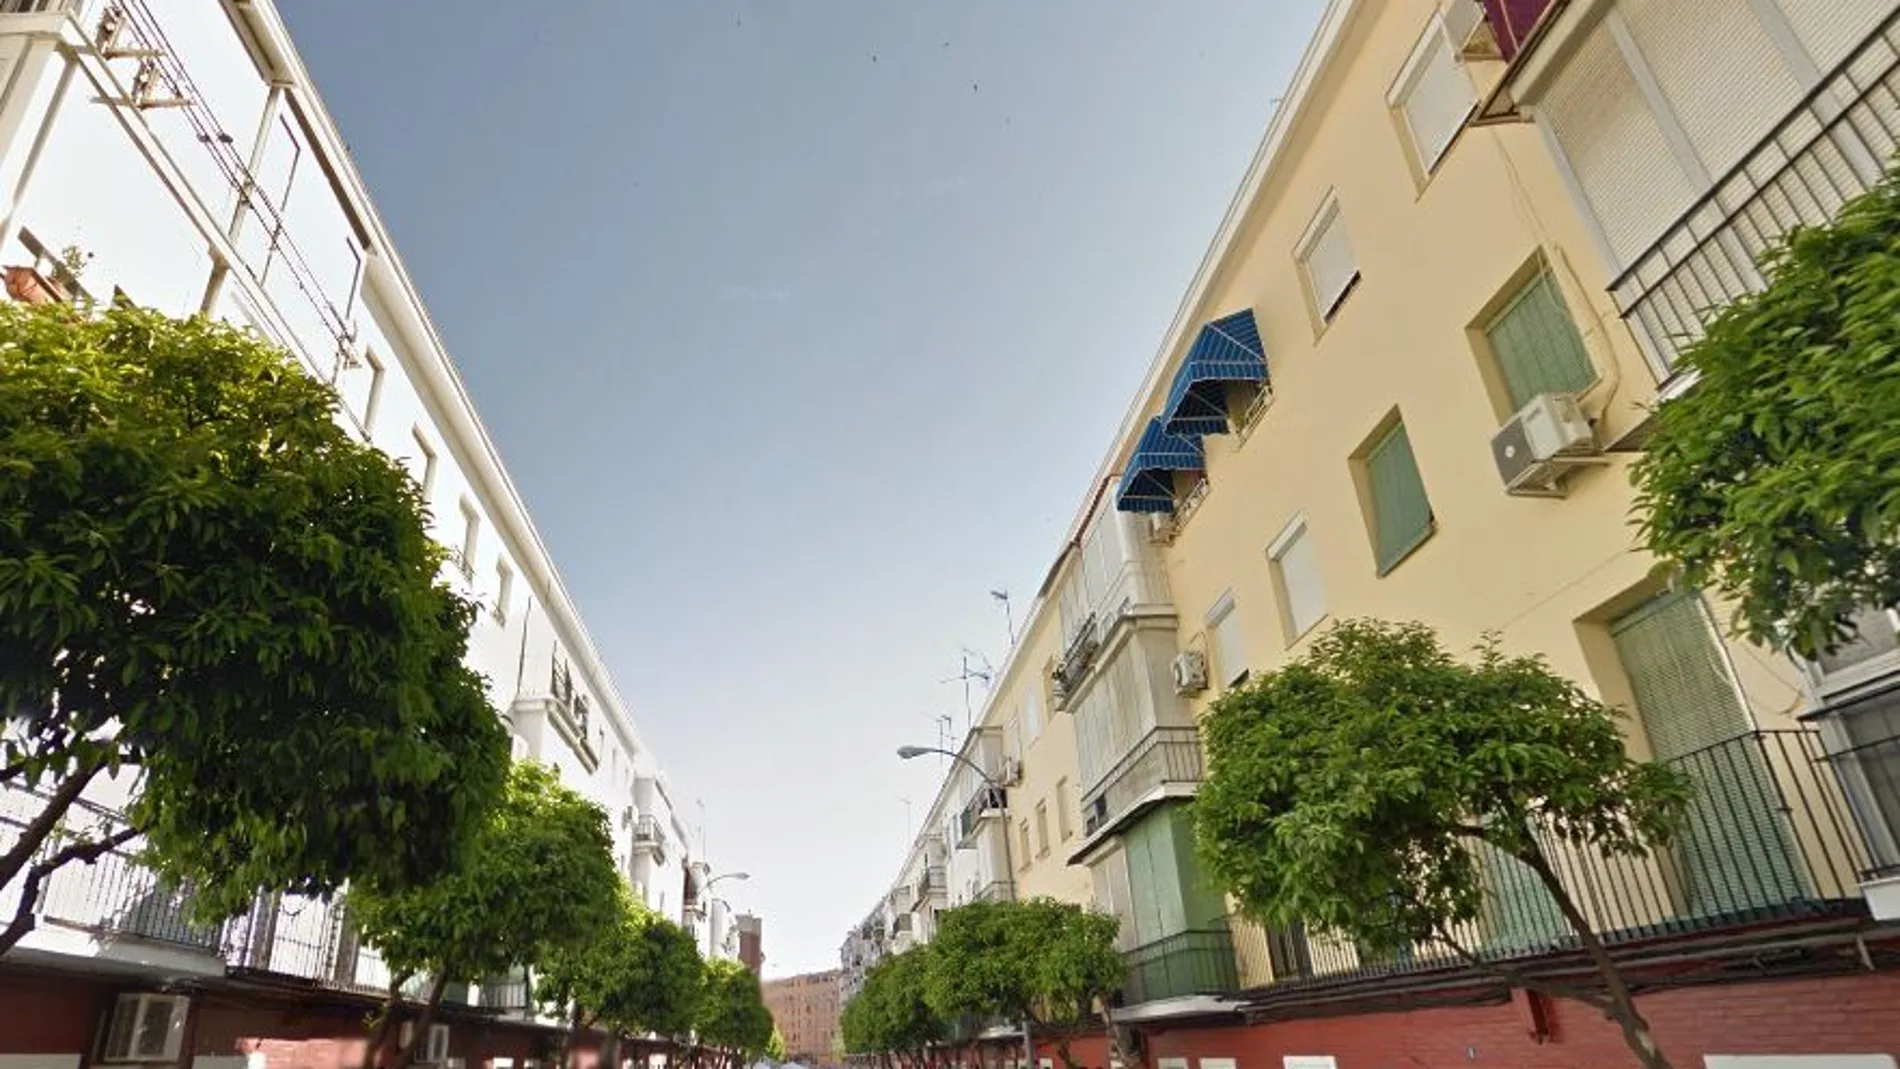 El cuerpo fue localizado en una vivienda de la calle Imaginero Luis Alvarez Duarte de Sevilla